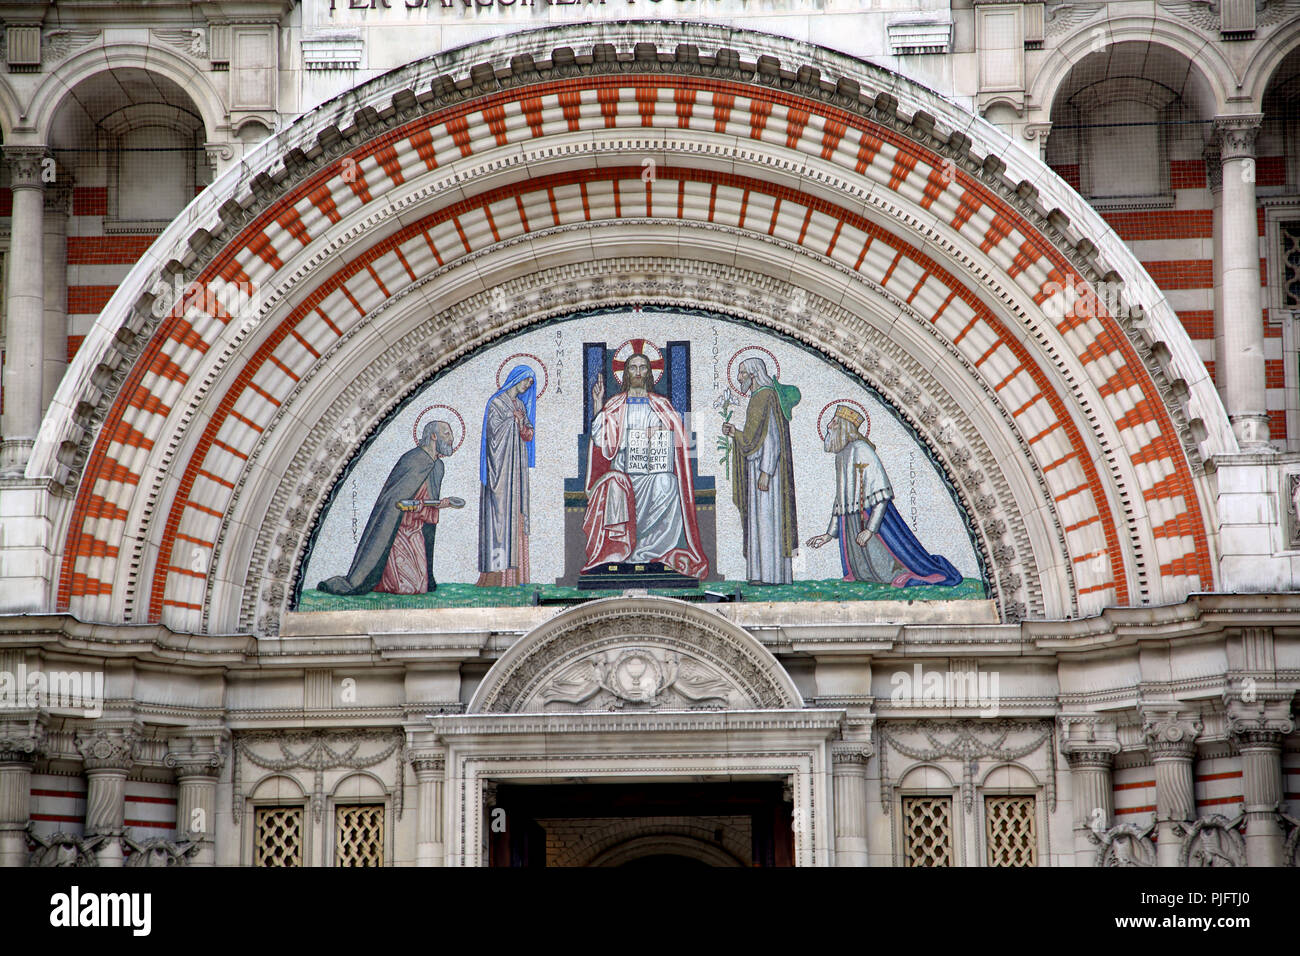 Victoria Londra Inghilterra Cattedrale di Westminster a nord ovest del portale timpano ad arco mostra mosaico raffigurante San Pietro, Vergine Maria, Gesù Cristo come Pantocr Foto Stock